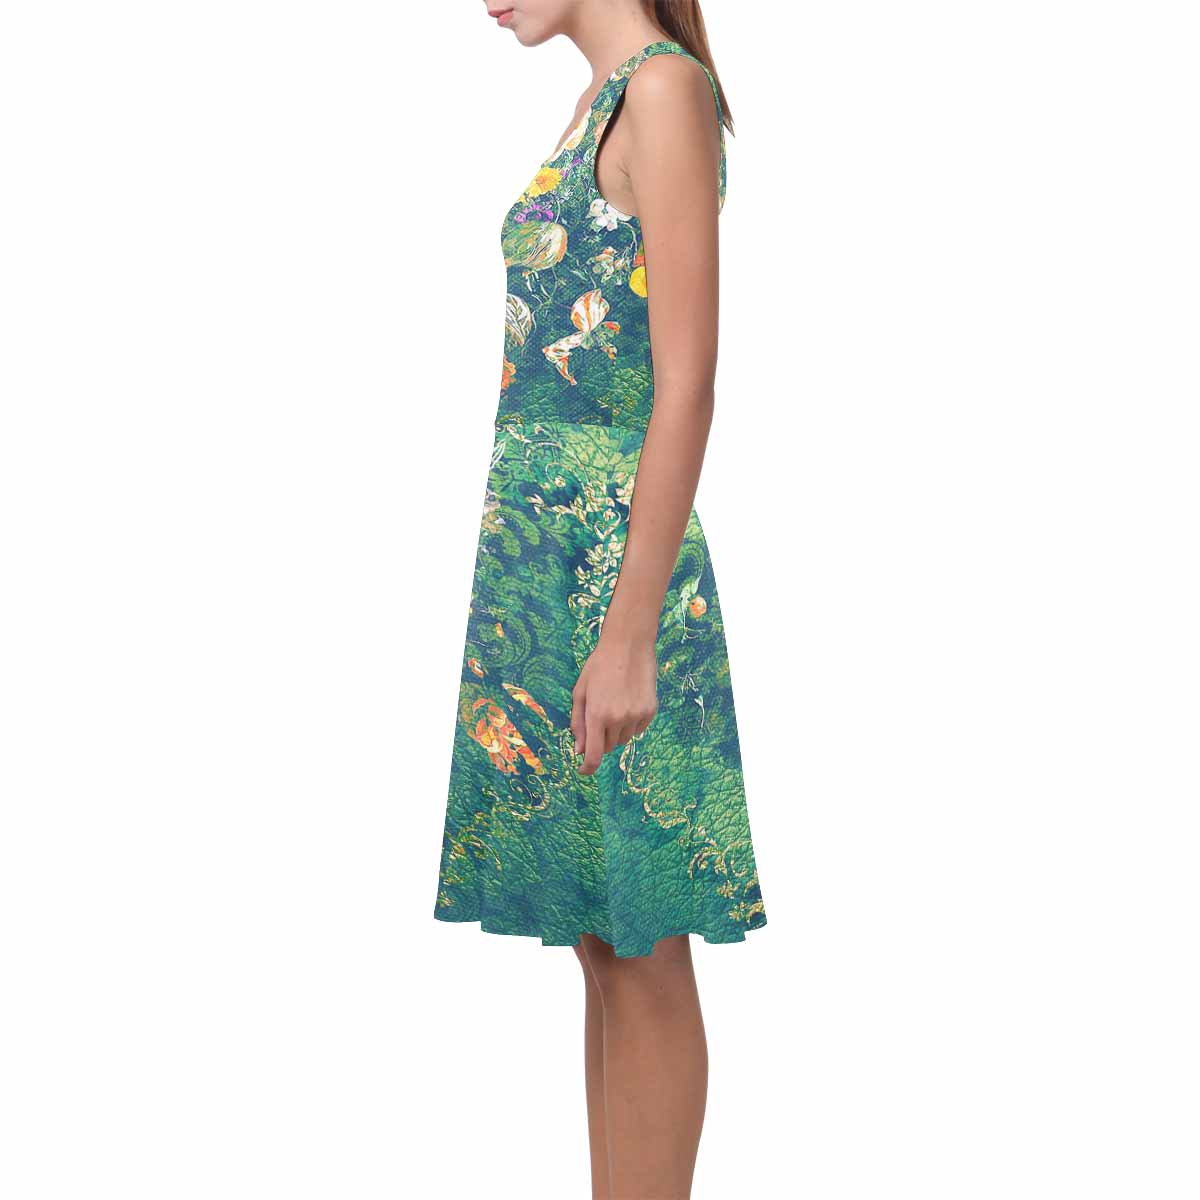 Antique General summer dress, MODEL 09534, design 13